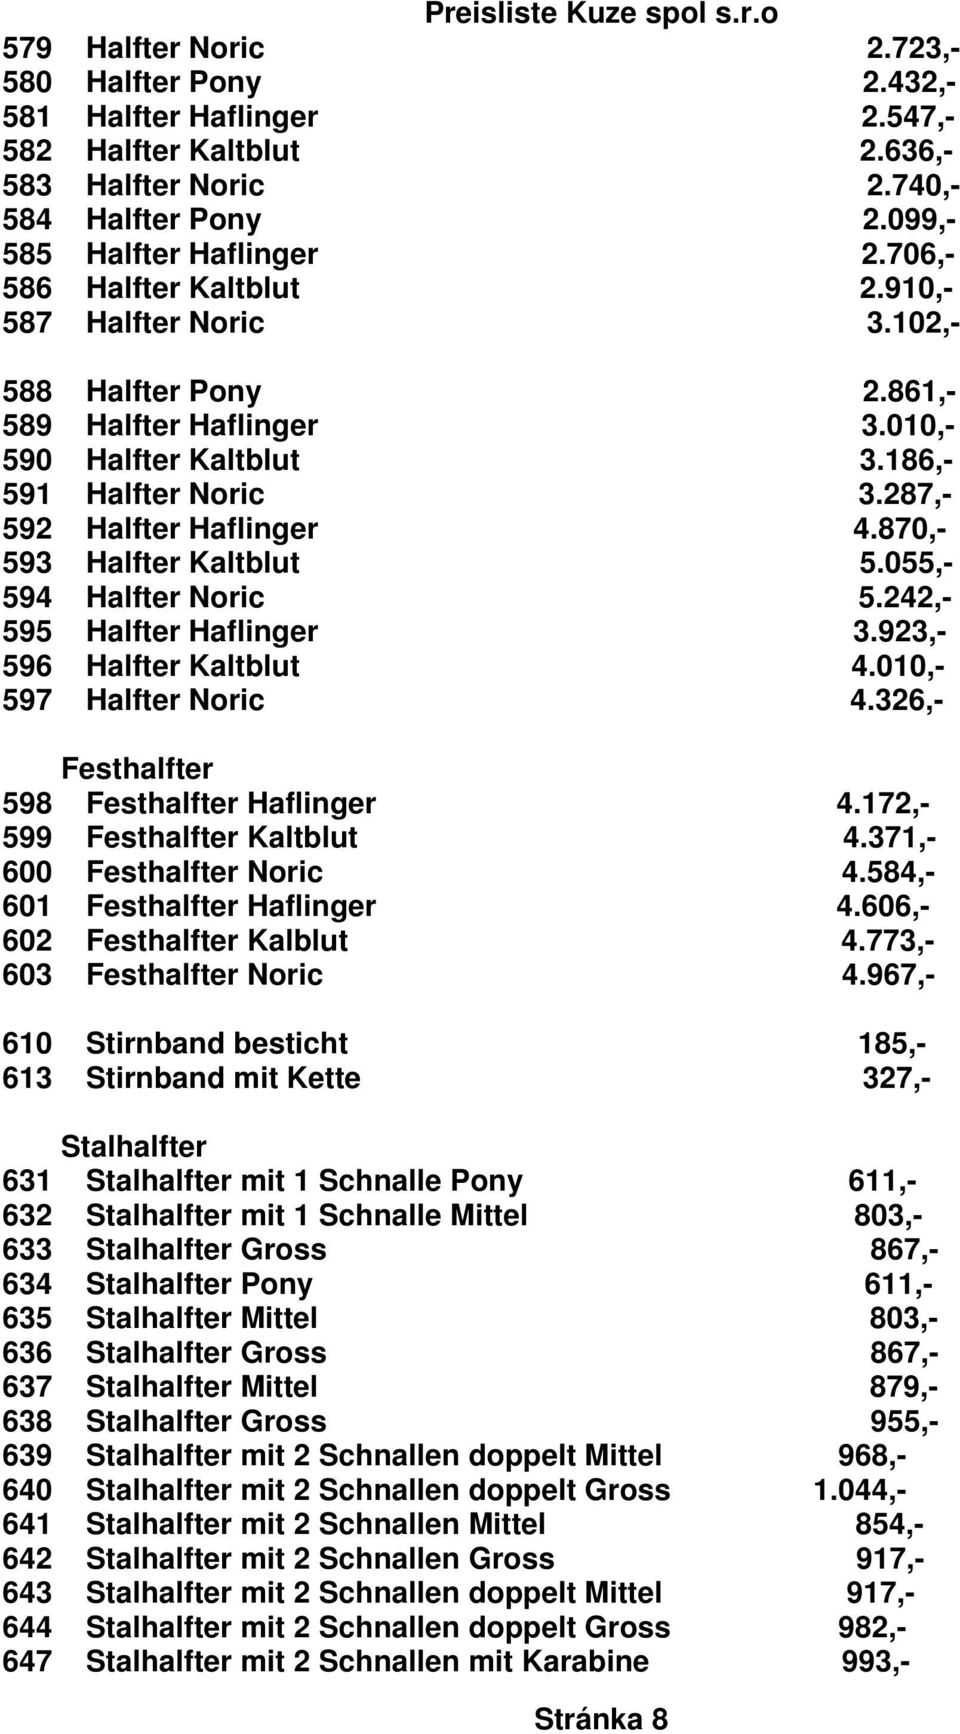 870,- 593 Halfter Kaltblut 5.055,- 594 Halfter Noric 5.242,- 595 Halfter Haflinger 3.923,- 596 Halfter Kaltblut 4.010,- 597 Halfter Noric 4.326,- Festhalfter 598 Festhalfter Haflinger 4.